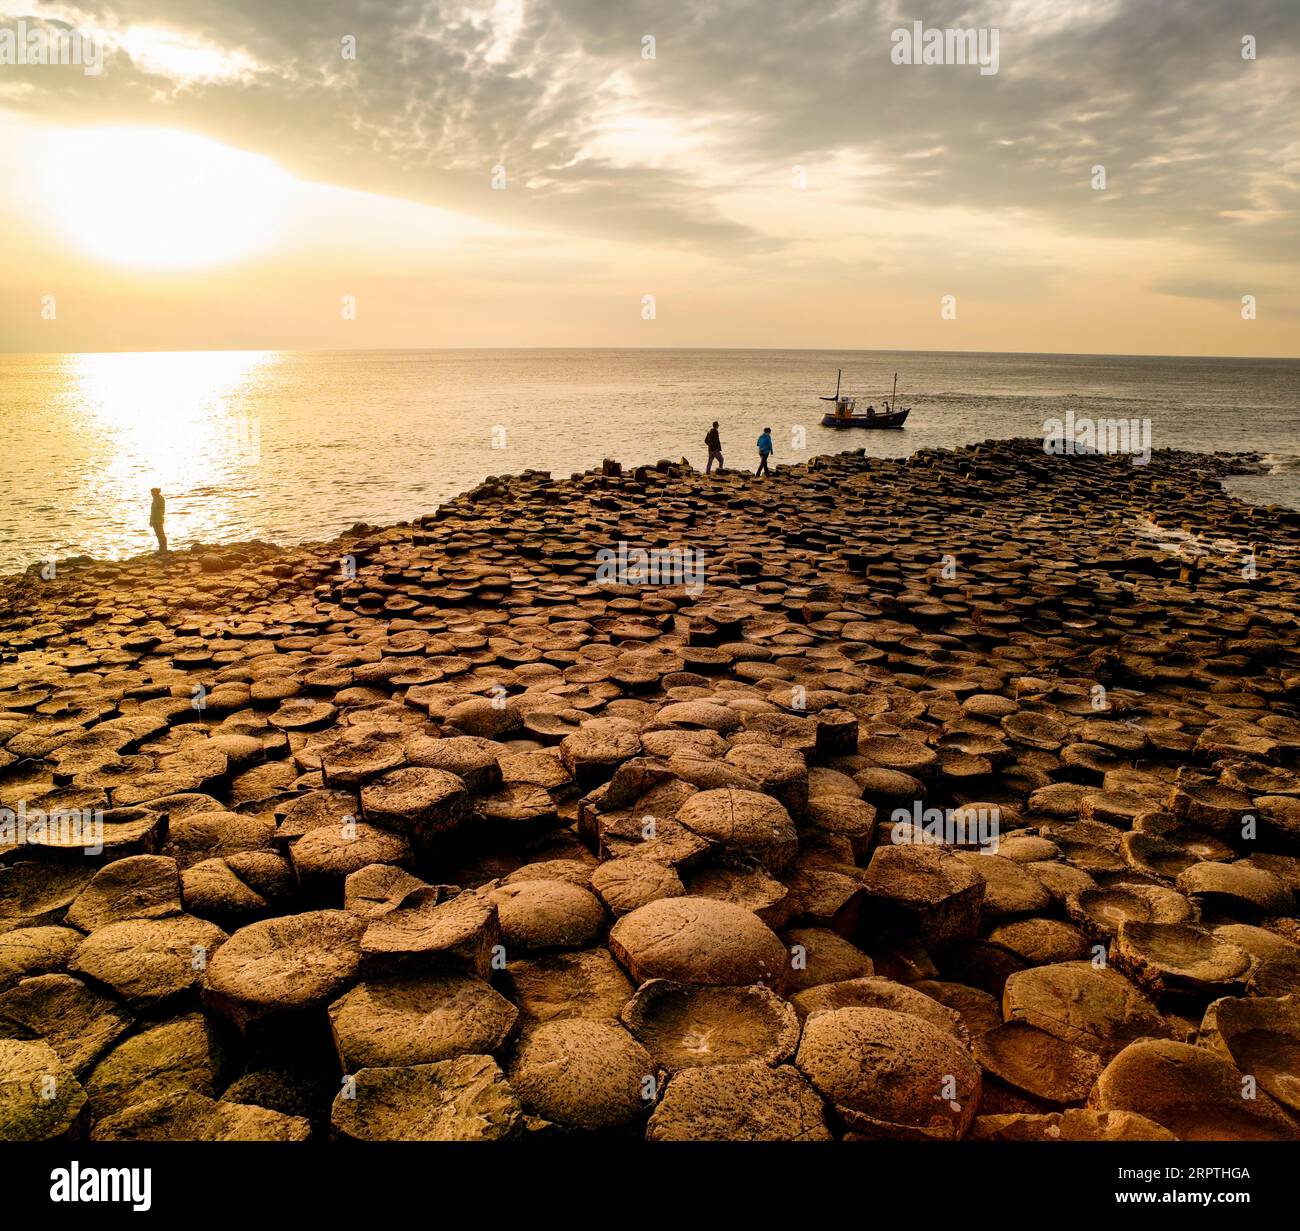 Coucher de soleil sur le site du patrimoine mondial de l'UNESCO, Giants Causeway, comté d'Antrim, Irlande du Nord Banque D'Images